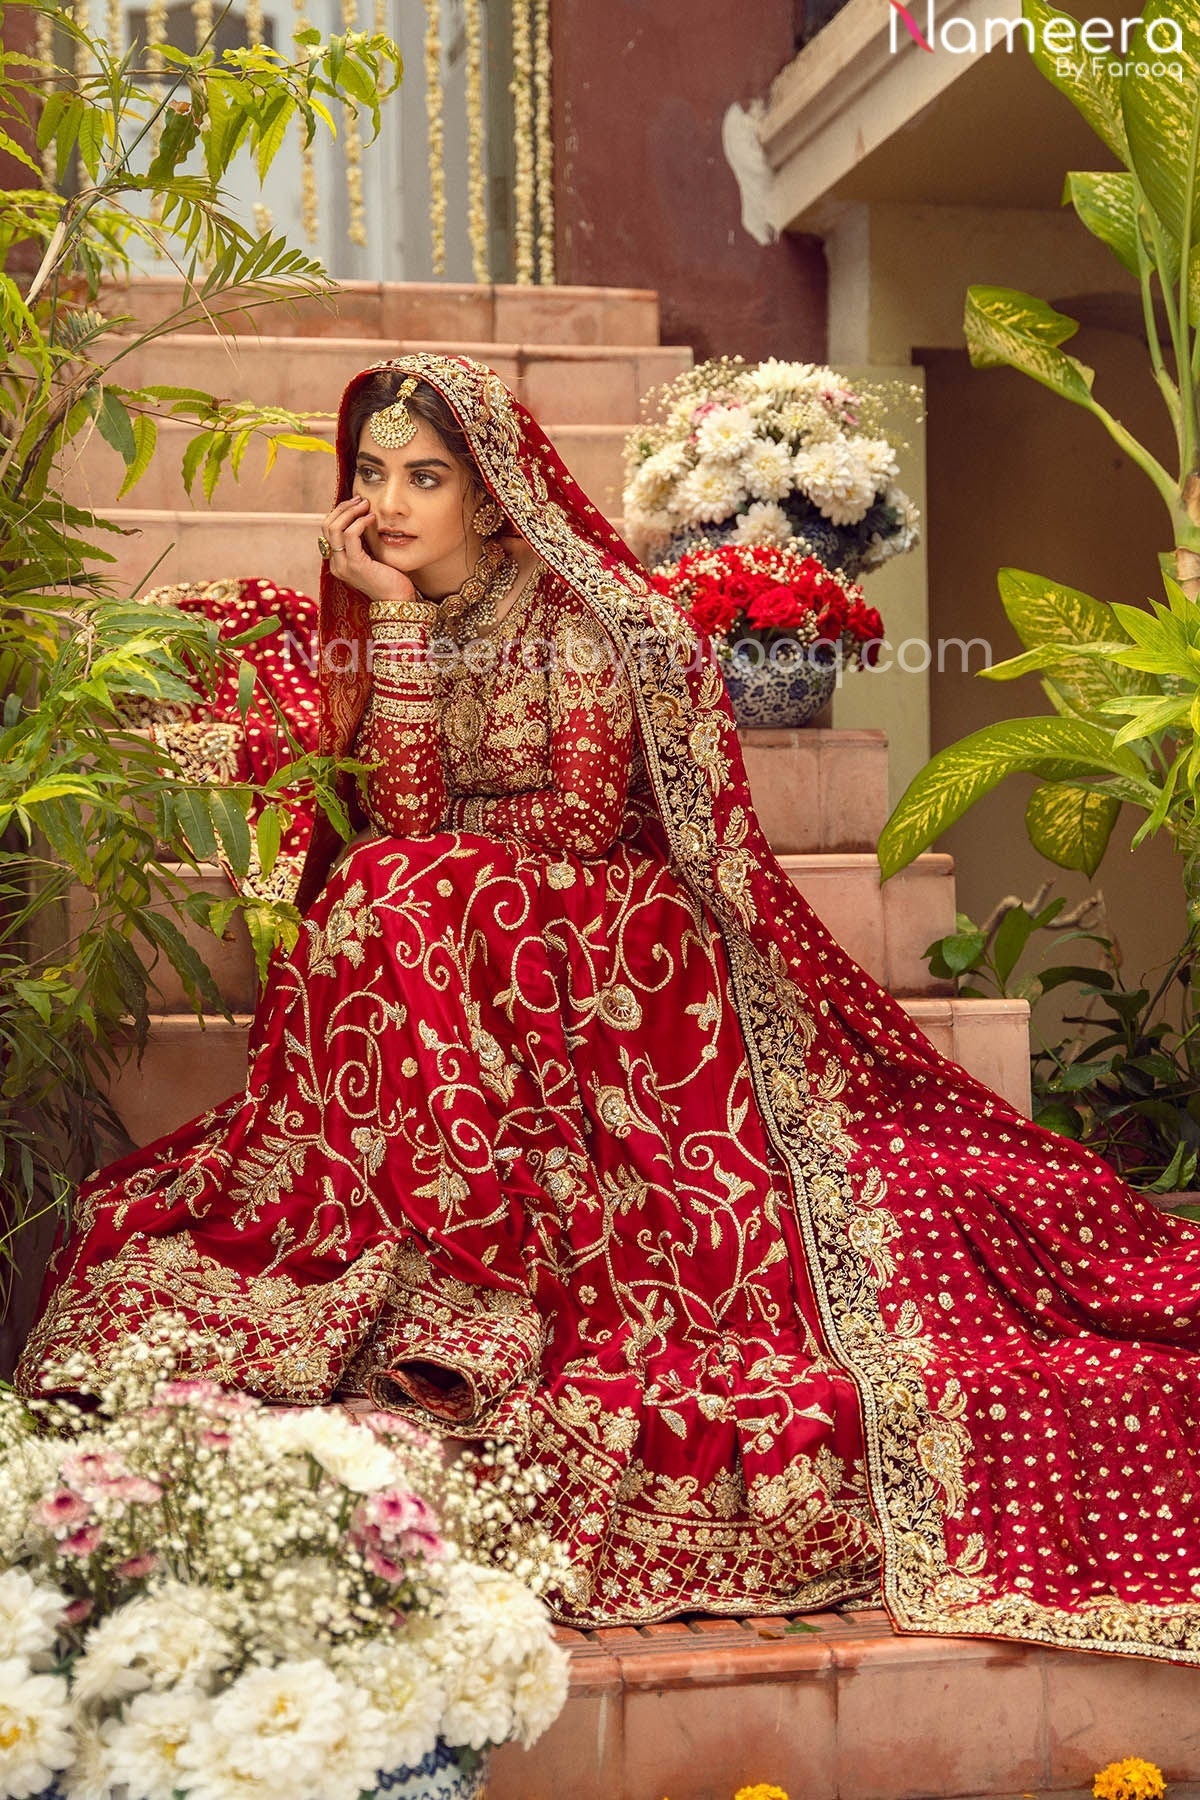 Pretty Red Bridal Dress Pakistani Designer Attire Online 2021 Nameera By Farooq 1145